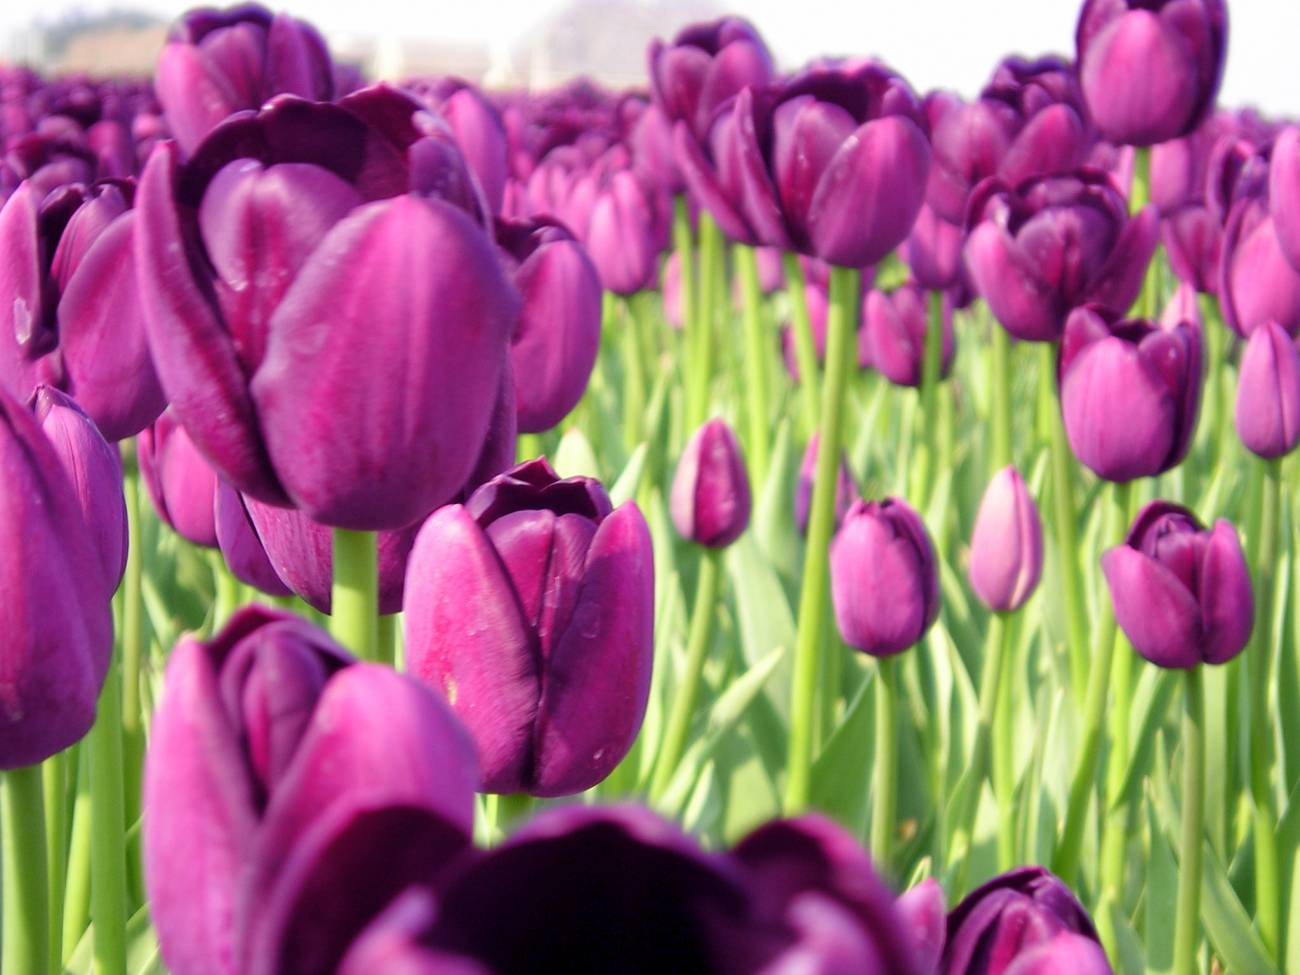 El tulipán entró en Europa por al-Andalus cinco siglos antes de lo que se estimaba